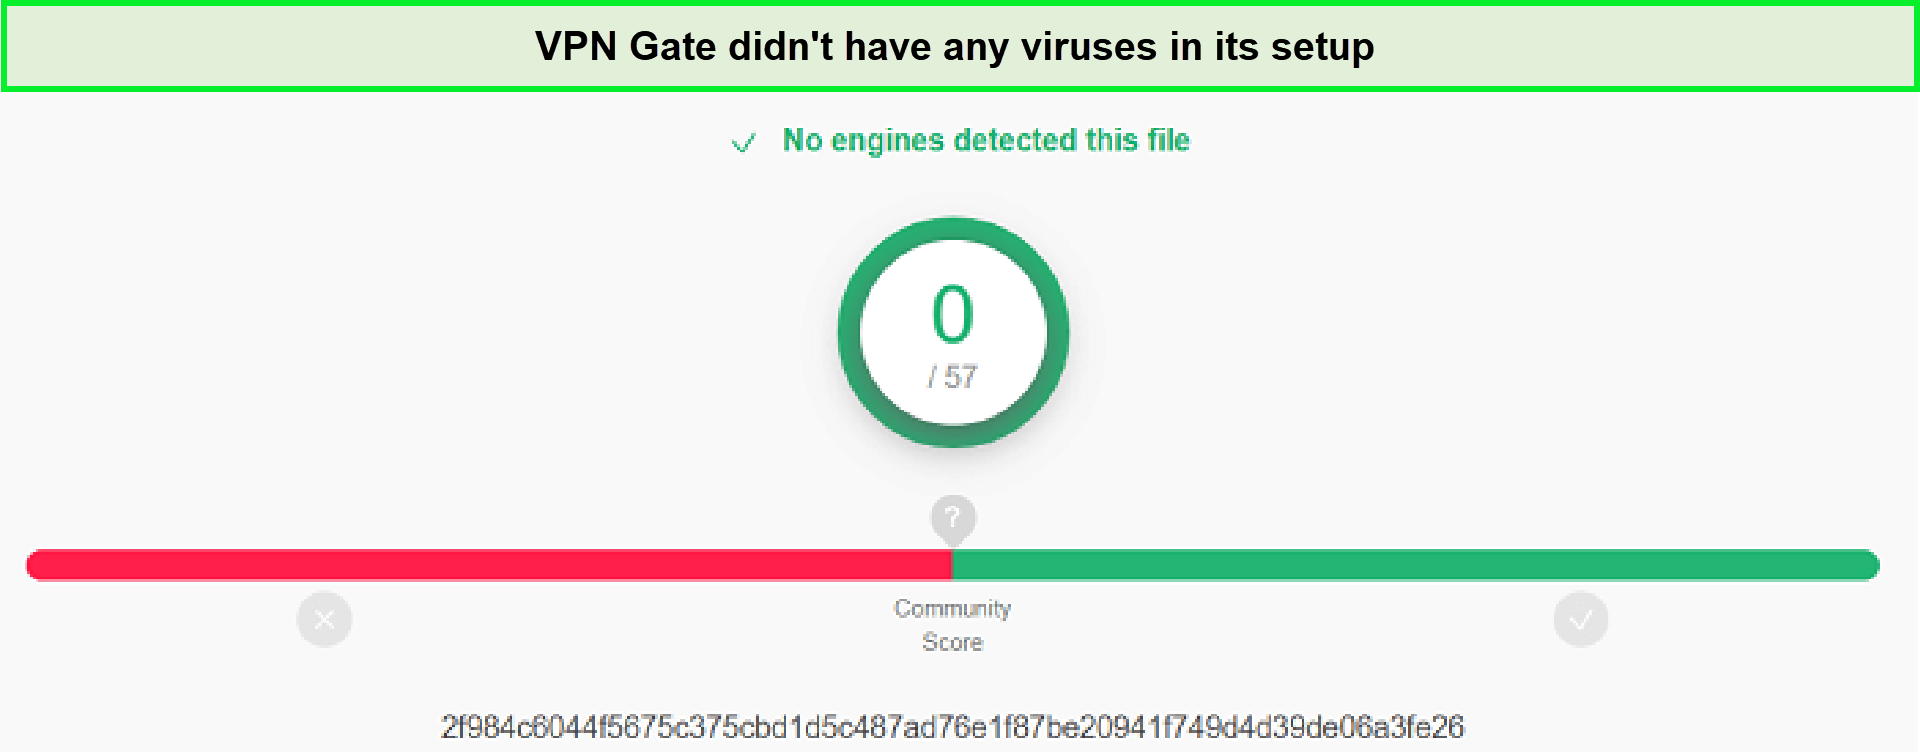 Virus-Test-in-Hong Kong-VPN-Gate